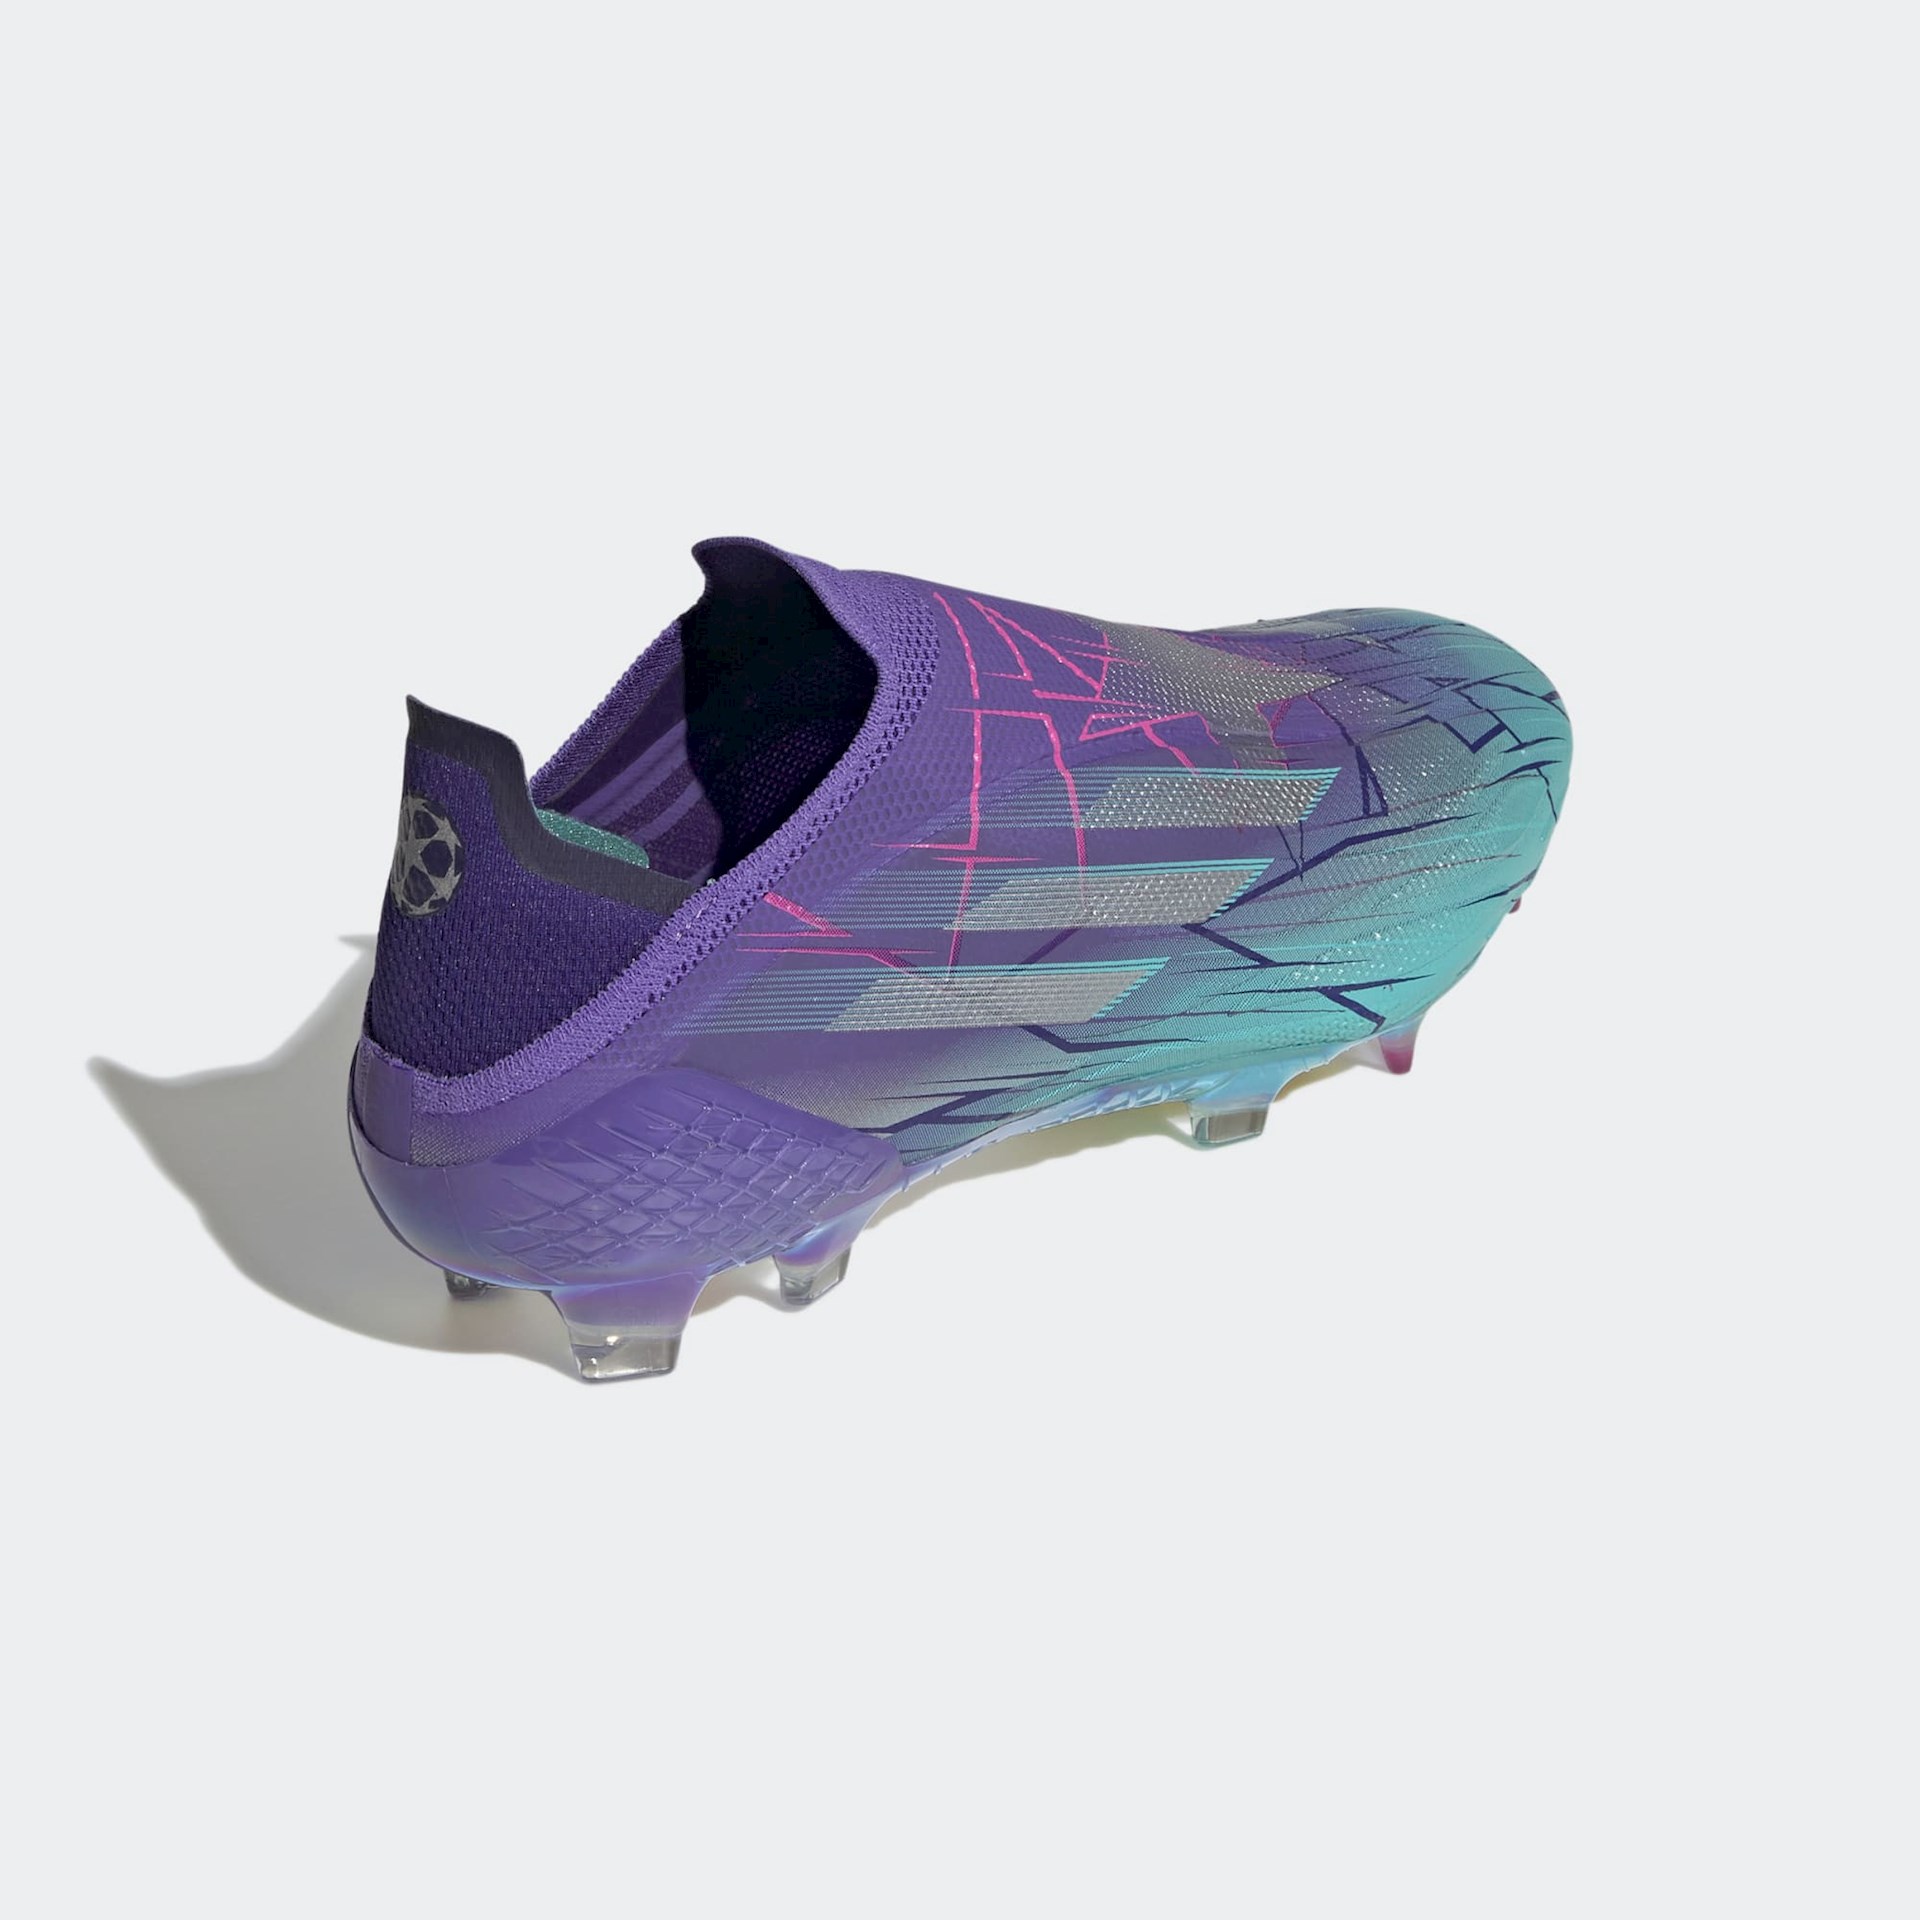 Paars/mint/ roze adidas X Speedflow voetbalschoenen Champions Code